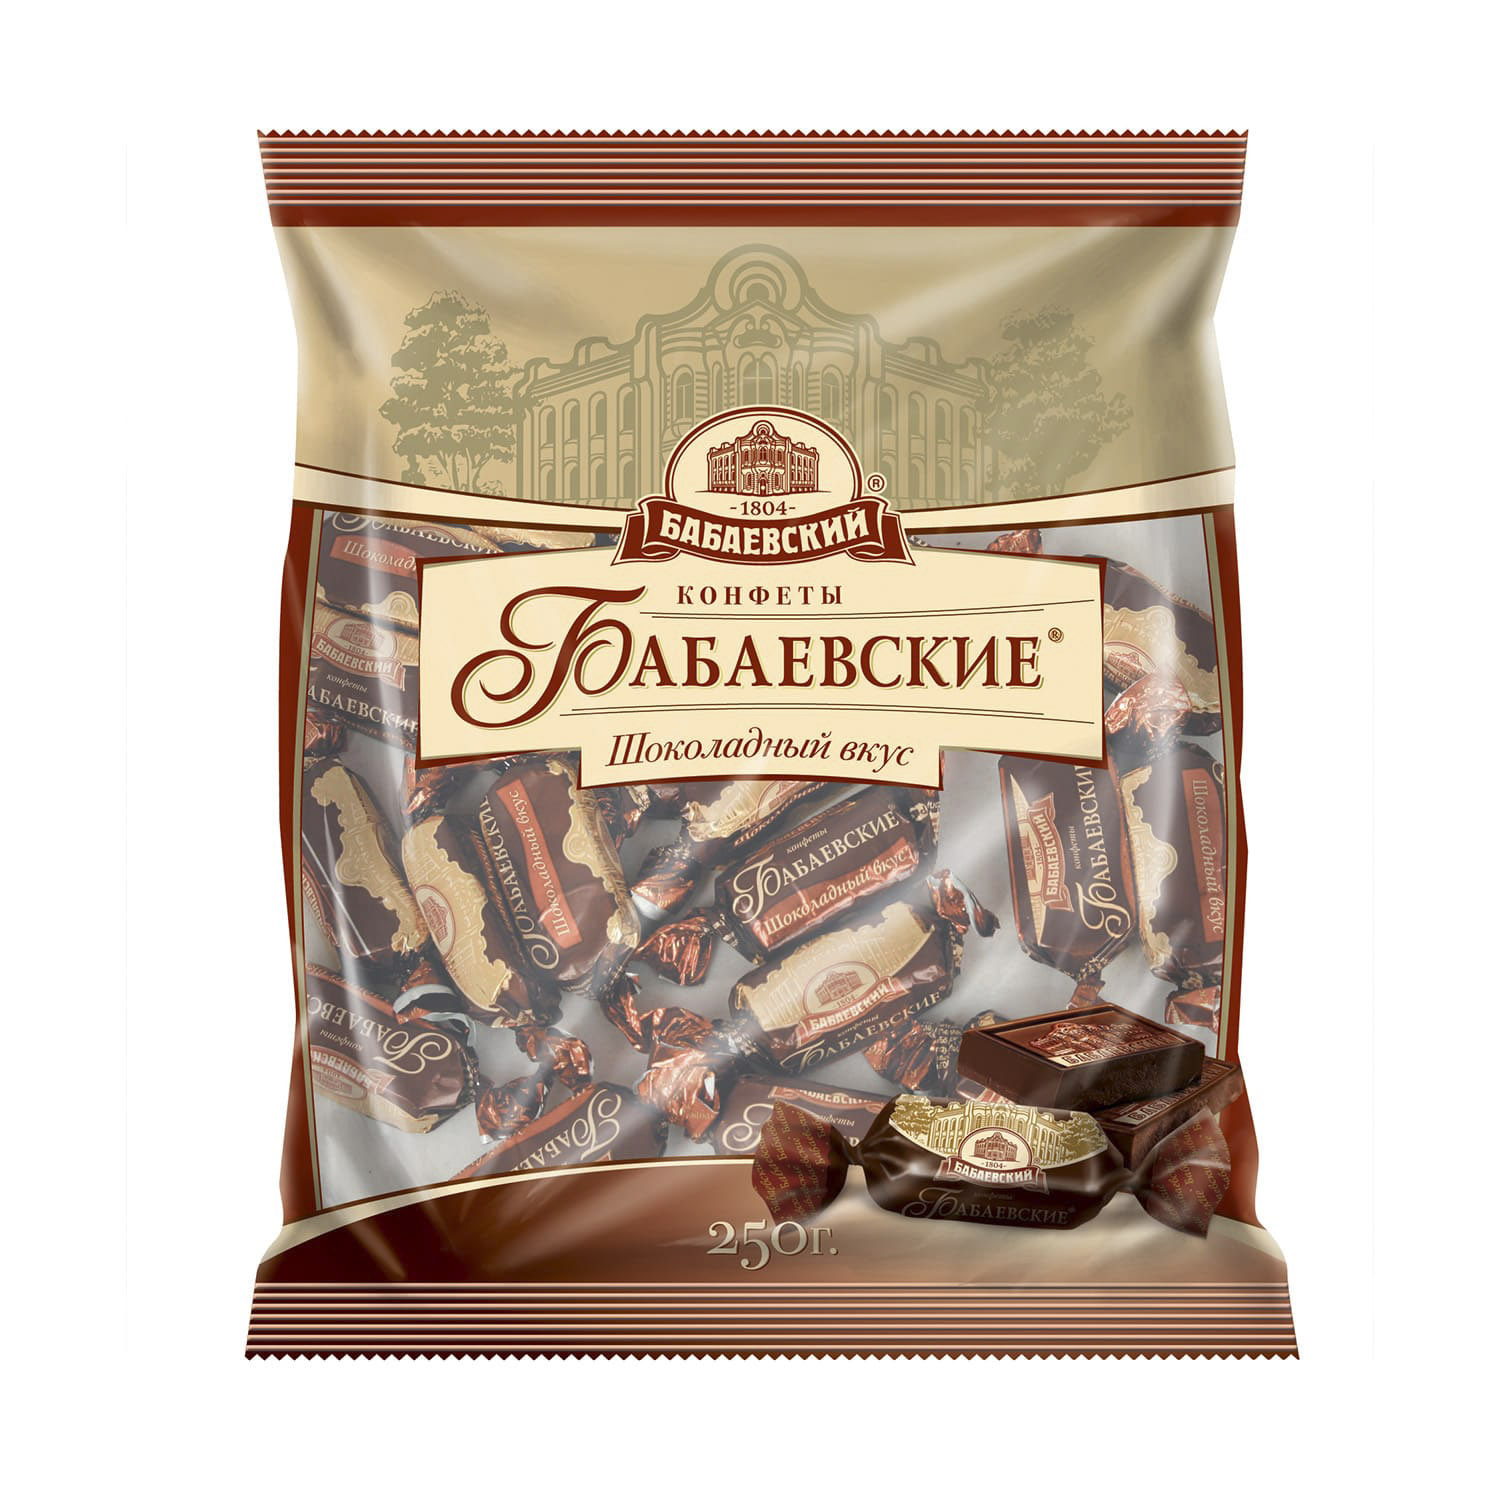 Конфеты Бабаевские шоколадный вкус 250 г конфеты объединённые кондитеры бабаевские вдохновение кг